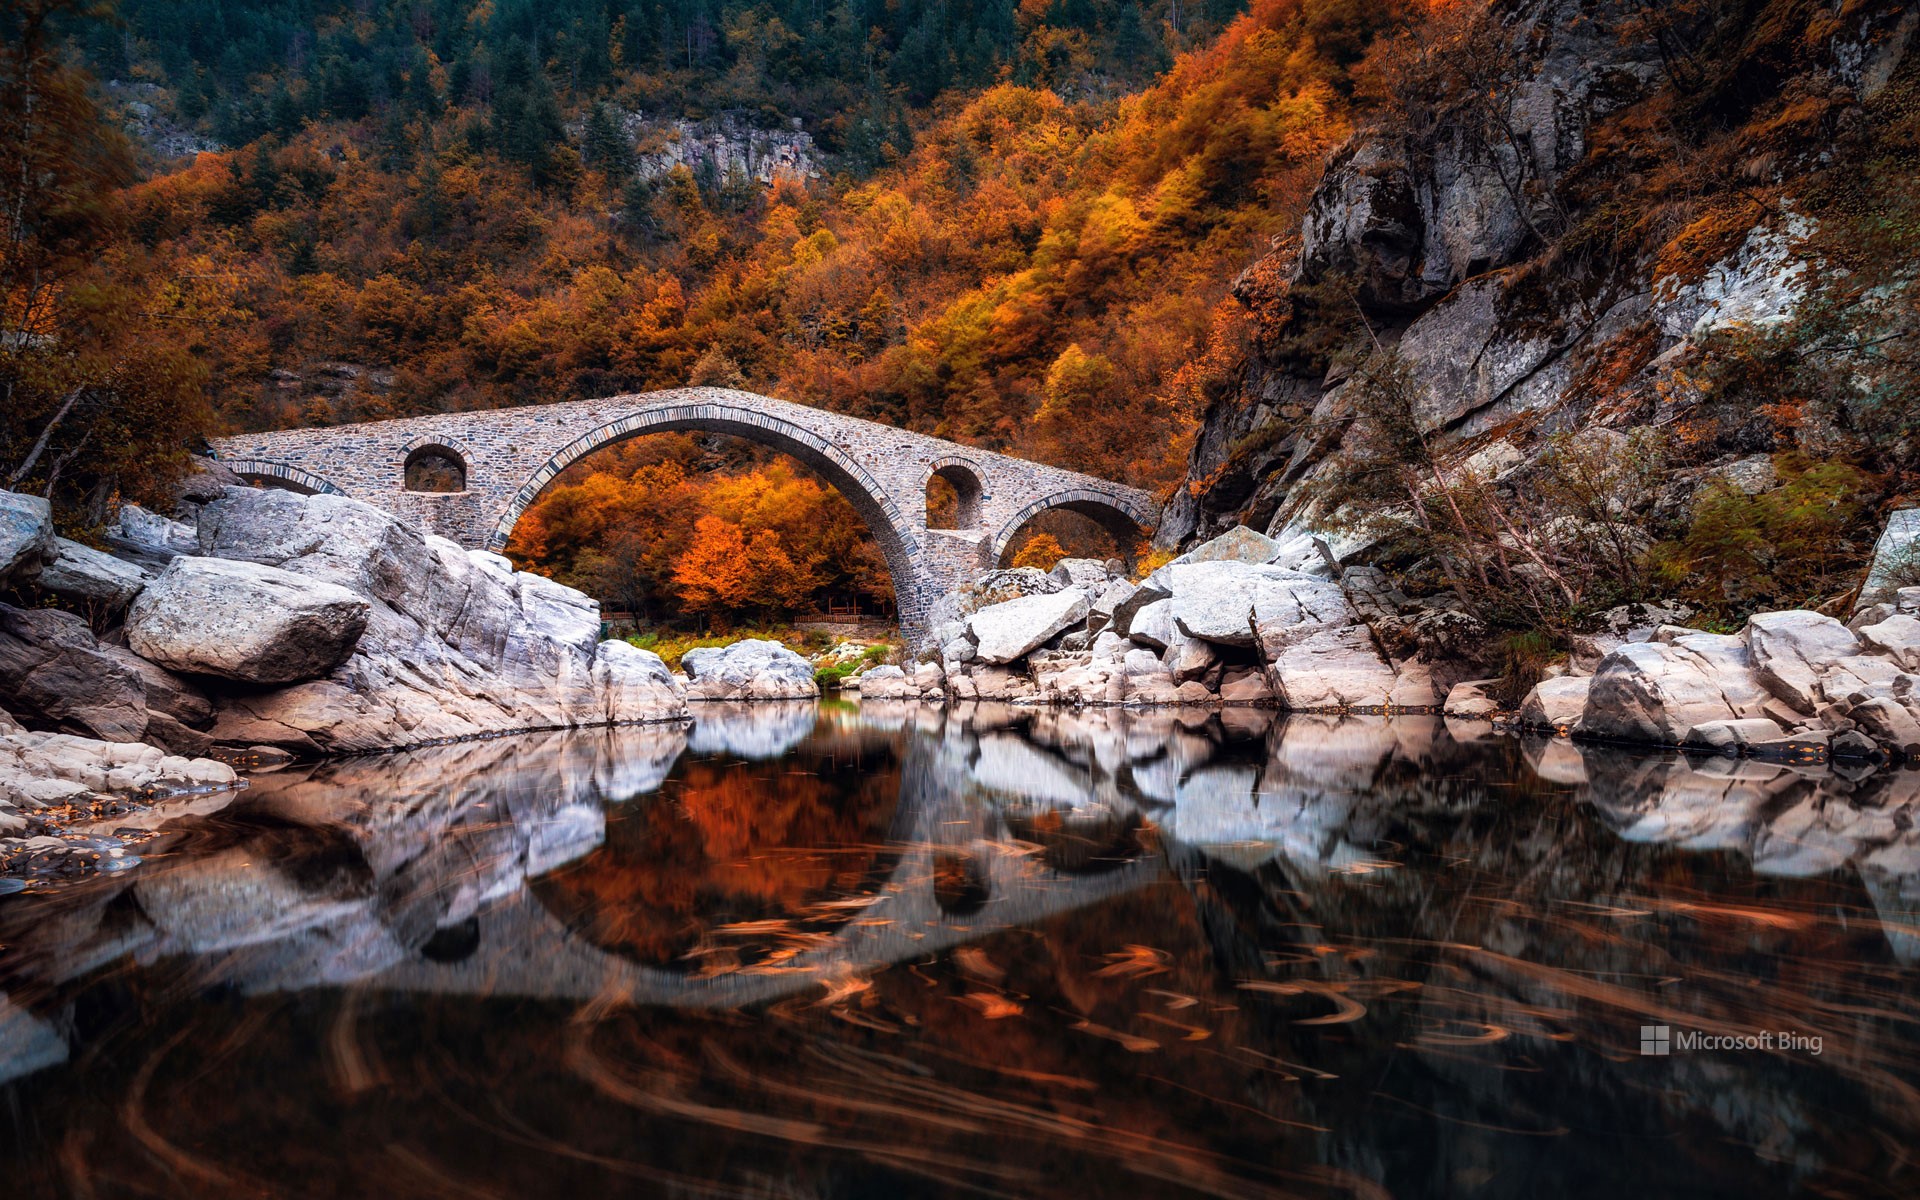 Dyavolski most (Devil's Bridge), Arda river, Bulgaria